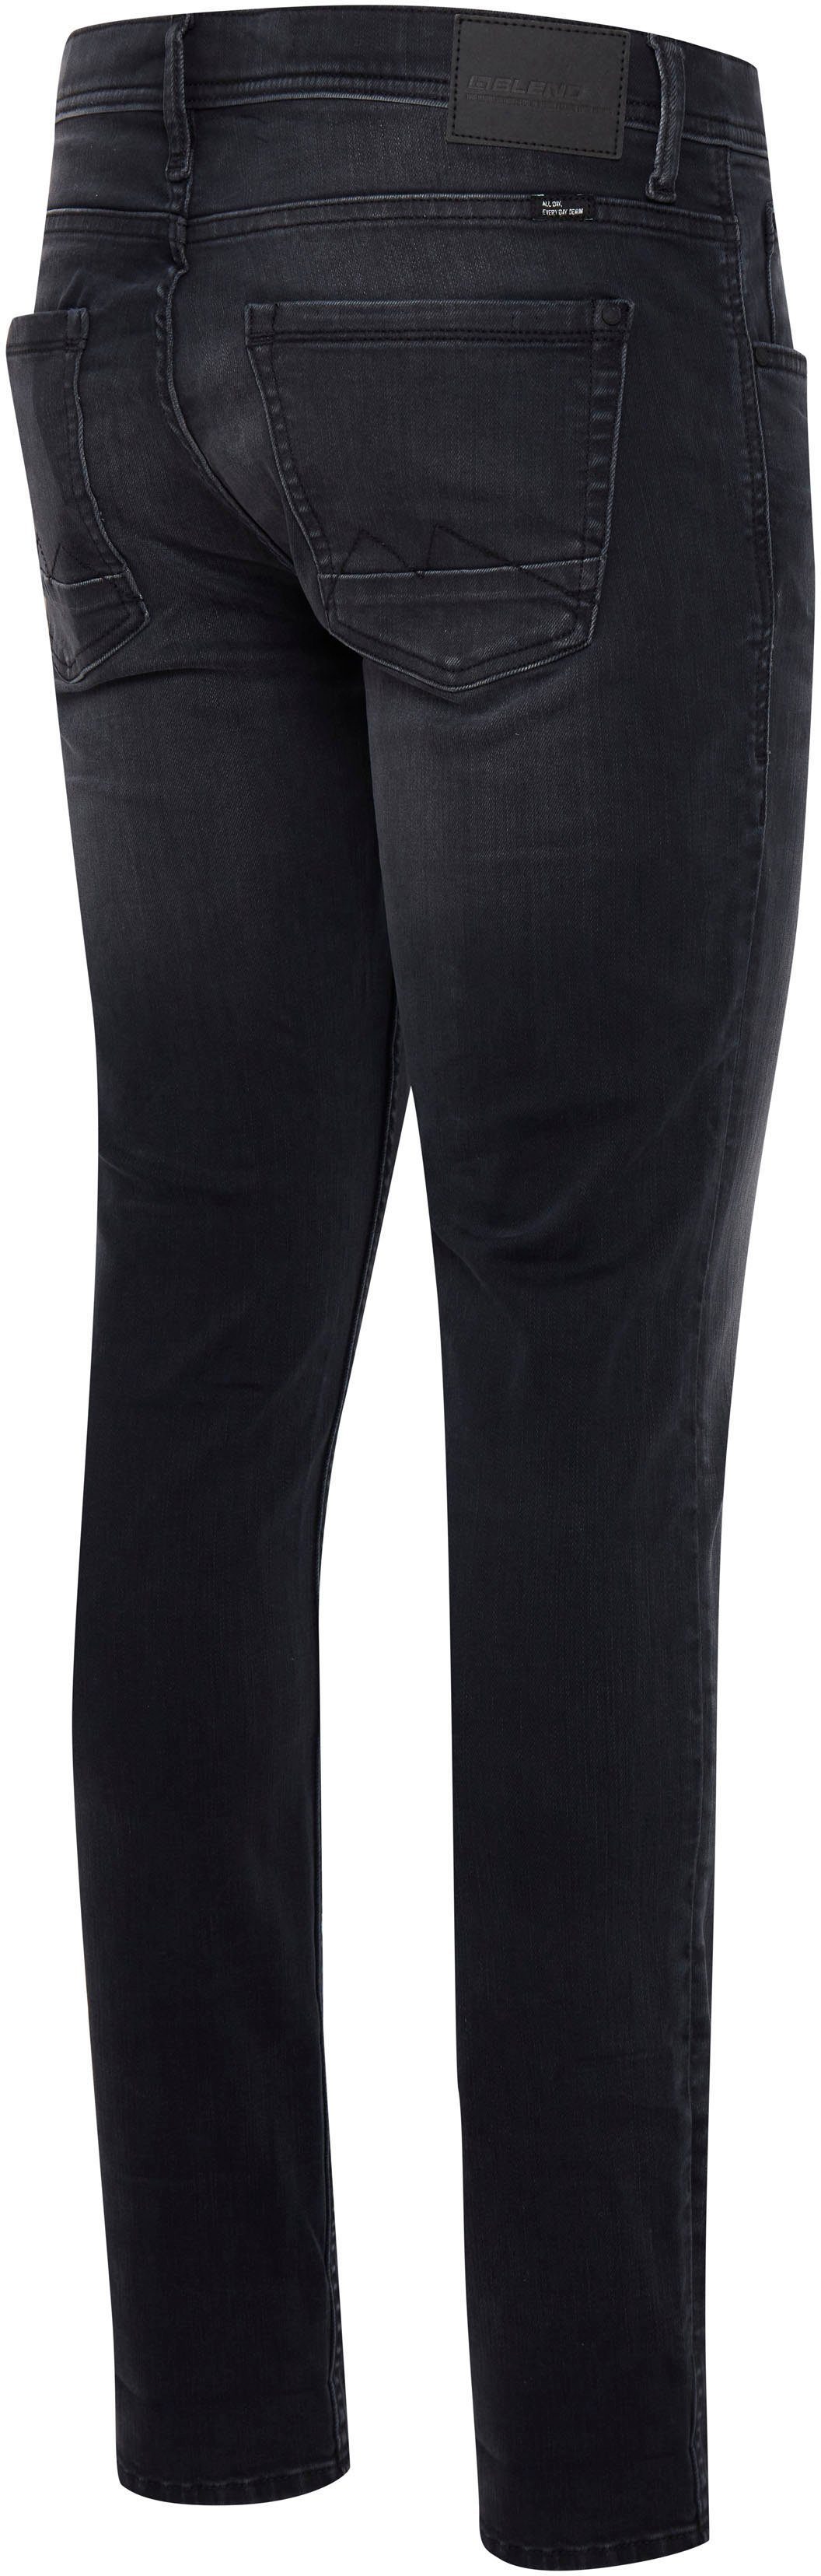 washed Blend Jet Multiflex Slim-fit-Jeans black